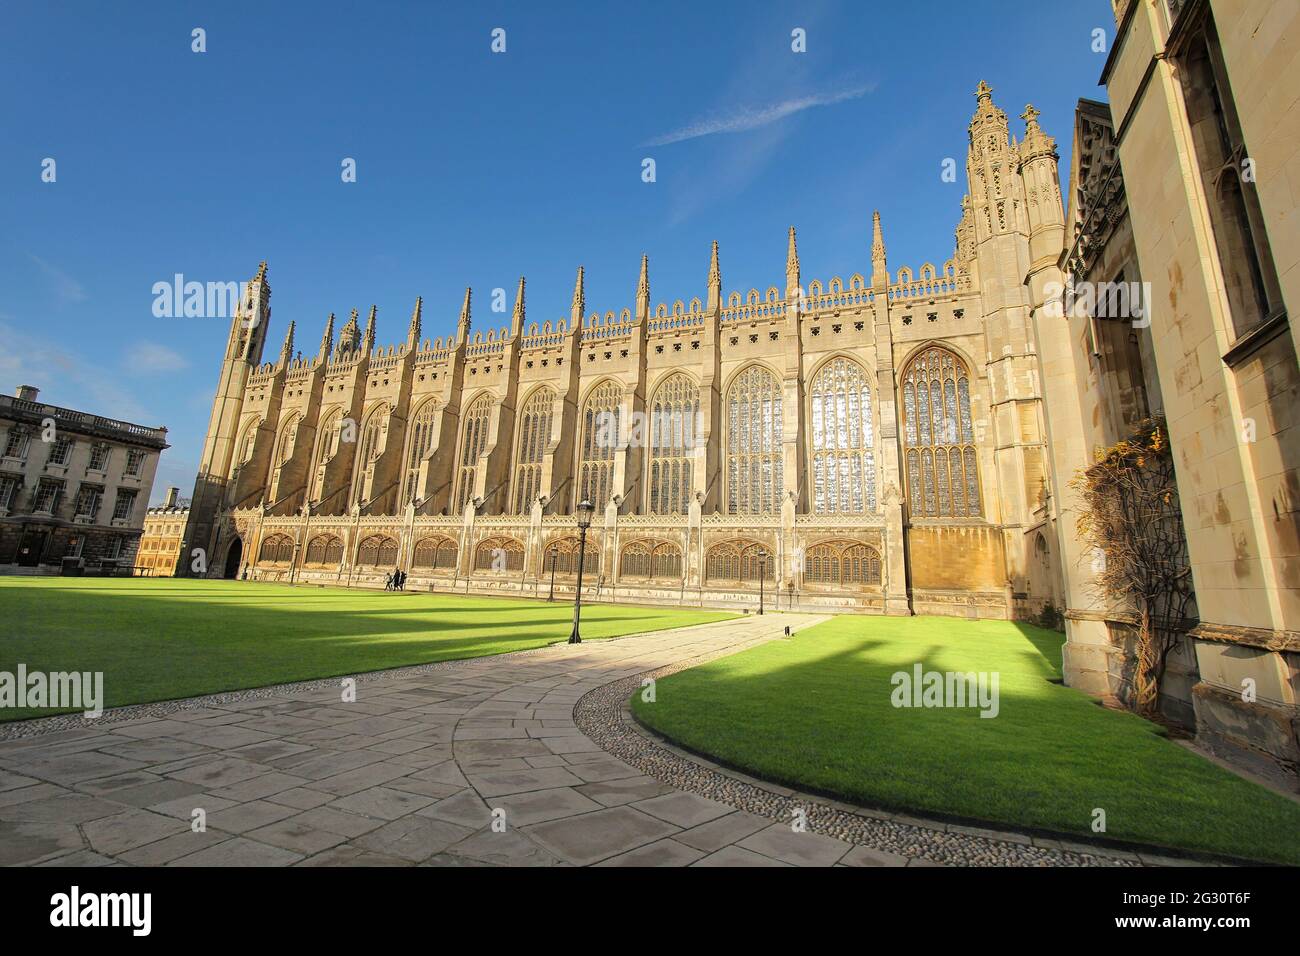 Vue sur une belle architecture du King's College de l'Université de Cambridge en Angleterre. Prise à Cambridge, Royaume-Uni, le 6 décembre 2011 Banque D'Images